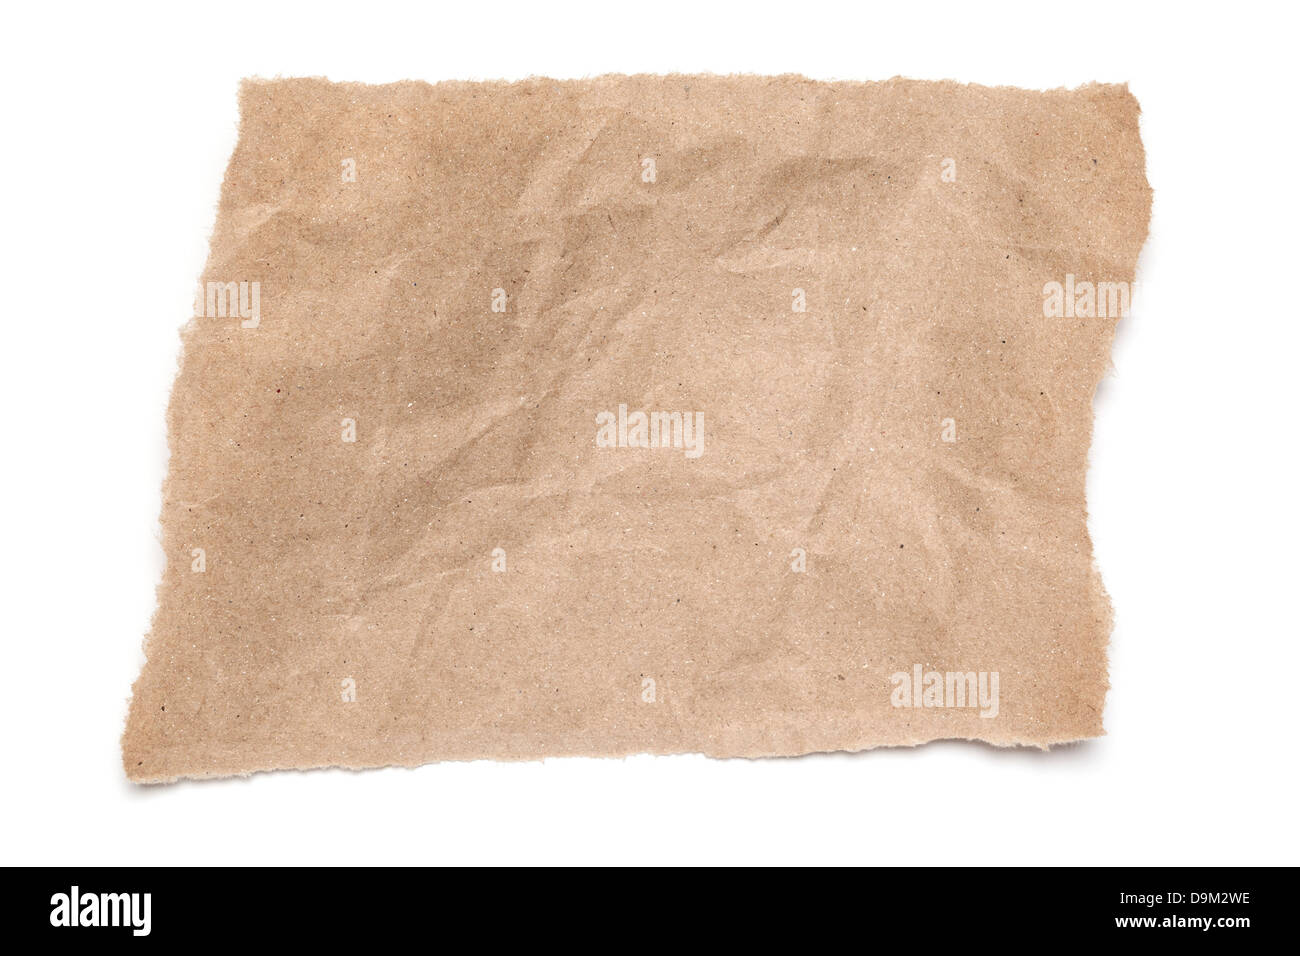 Zerrissen und zerknittert braunen Papier - ein zerrissenes Stück gerillter braun auf weißem Hintergrund mit weichen Schatten. Stockfoto